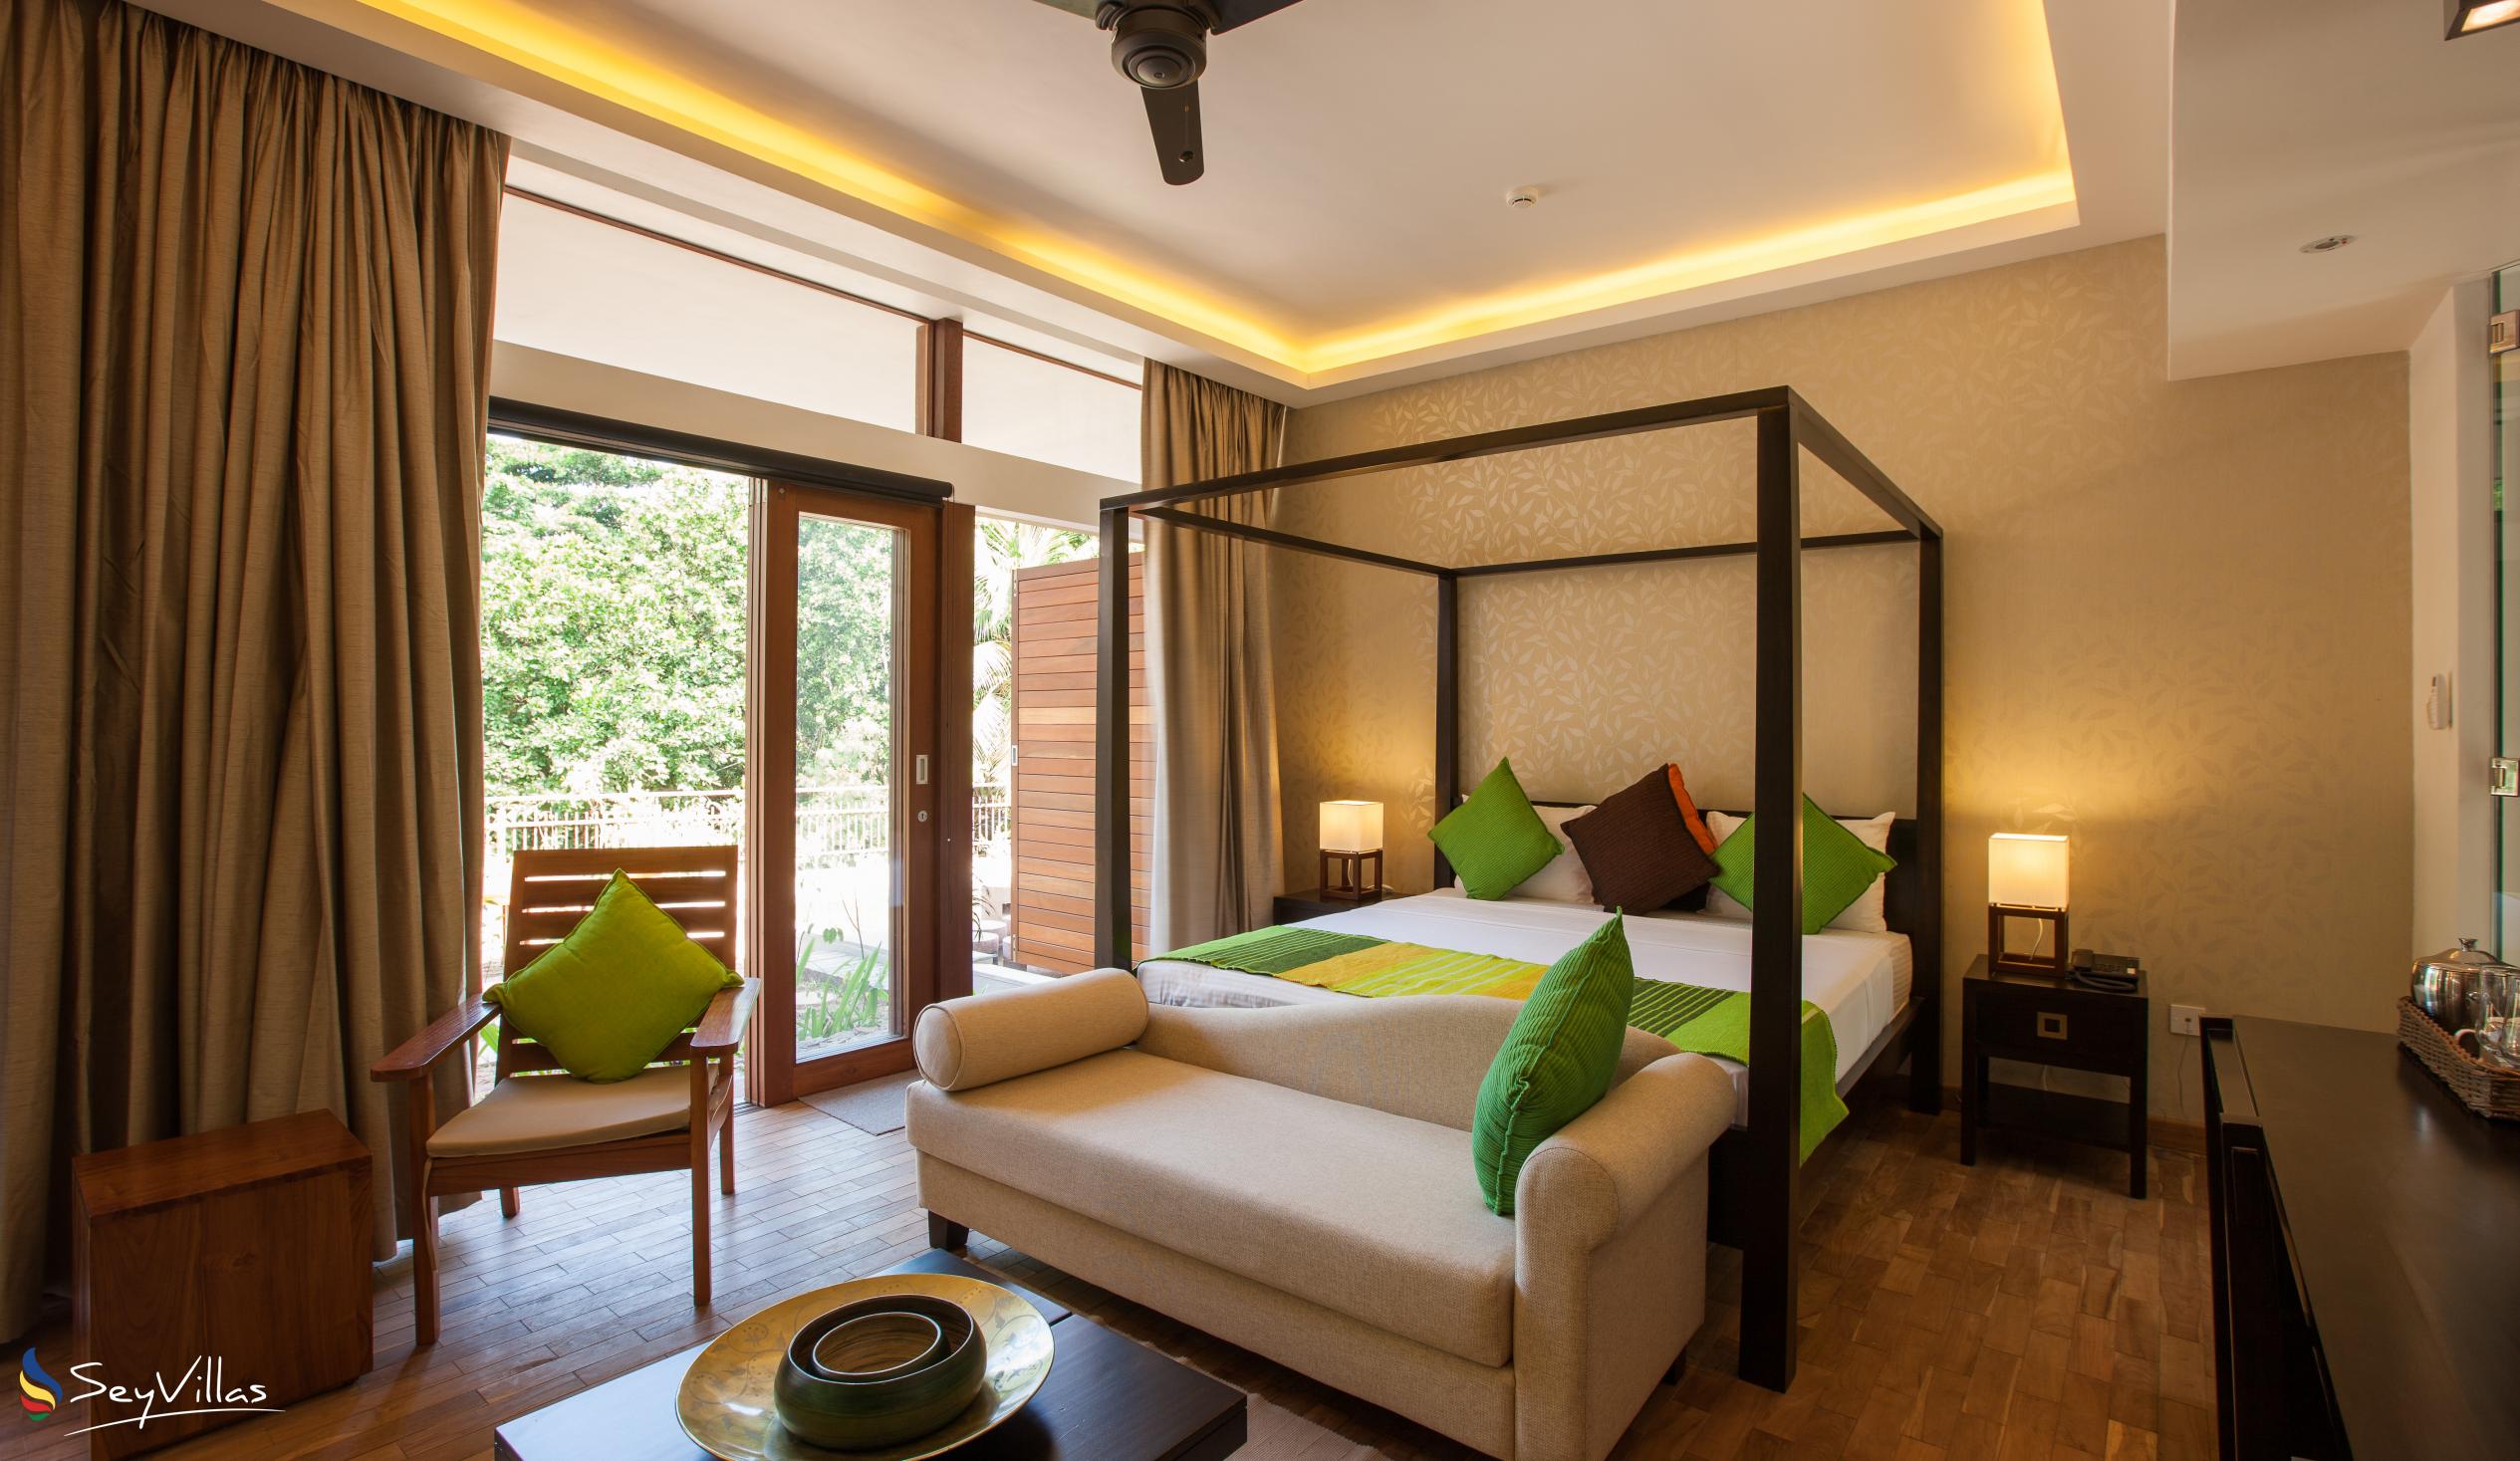 Foto 59: Le Relax Luxury Lodge - Suite Deluxe - La Digue (Seychelles)